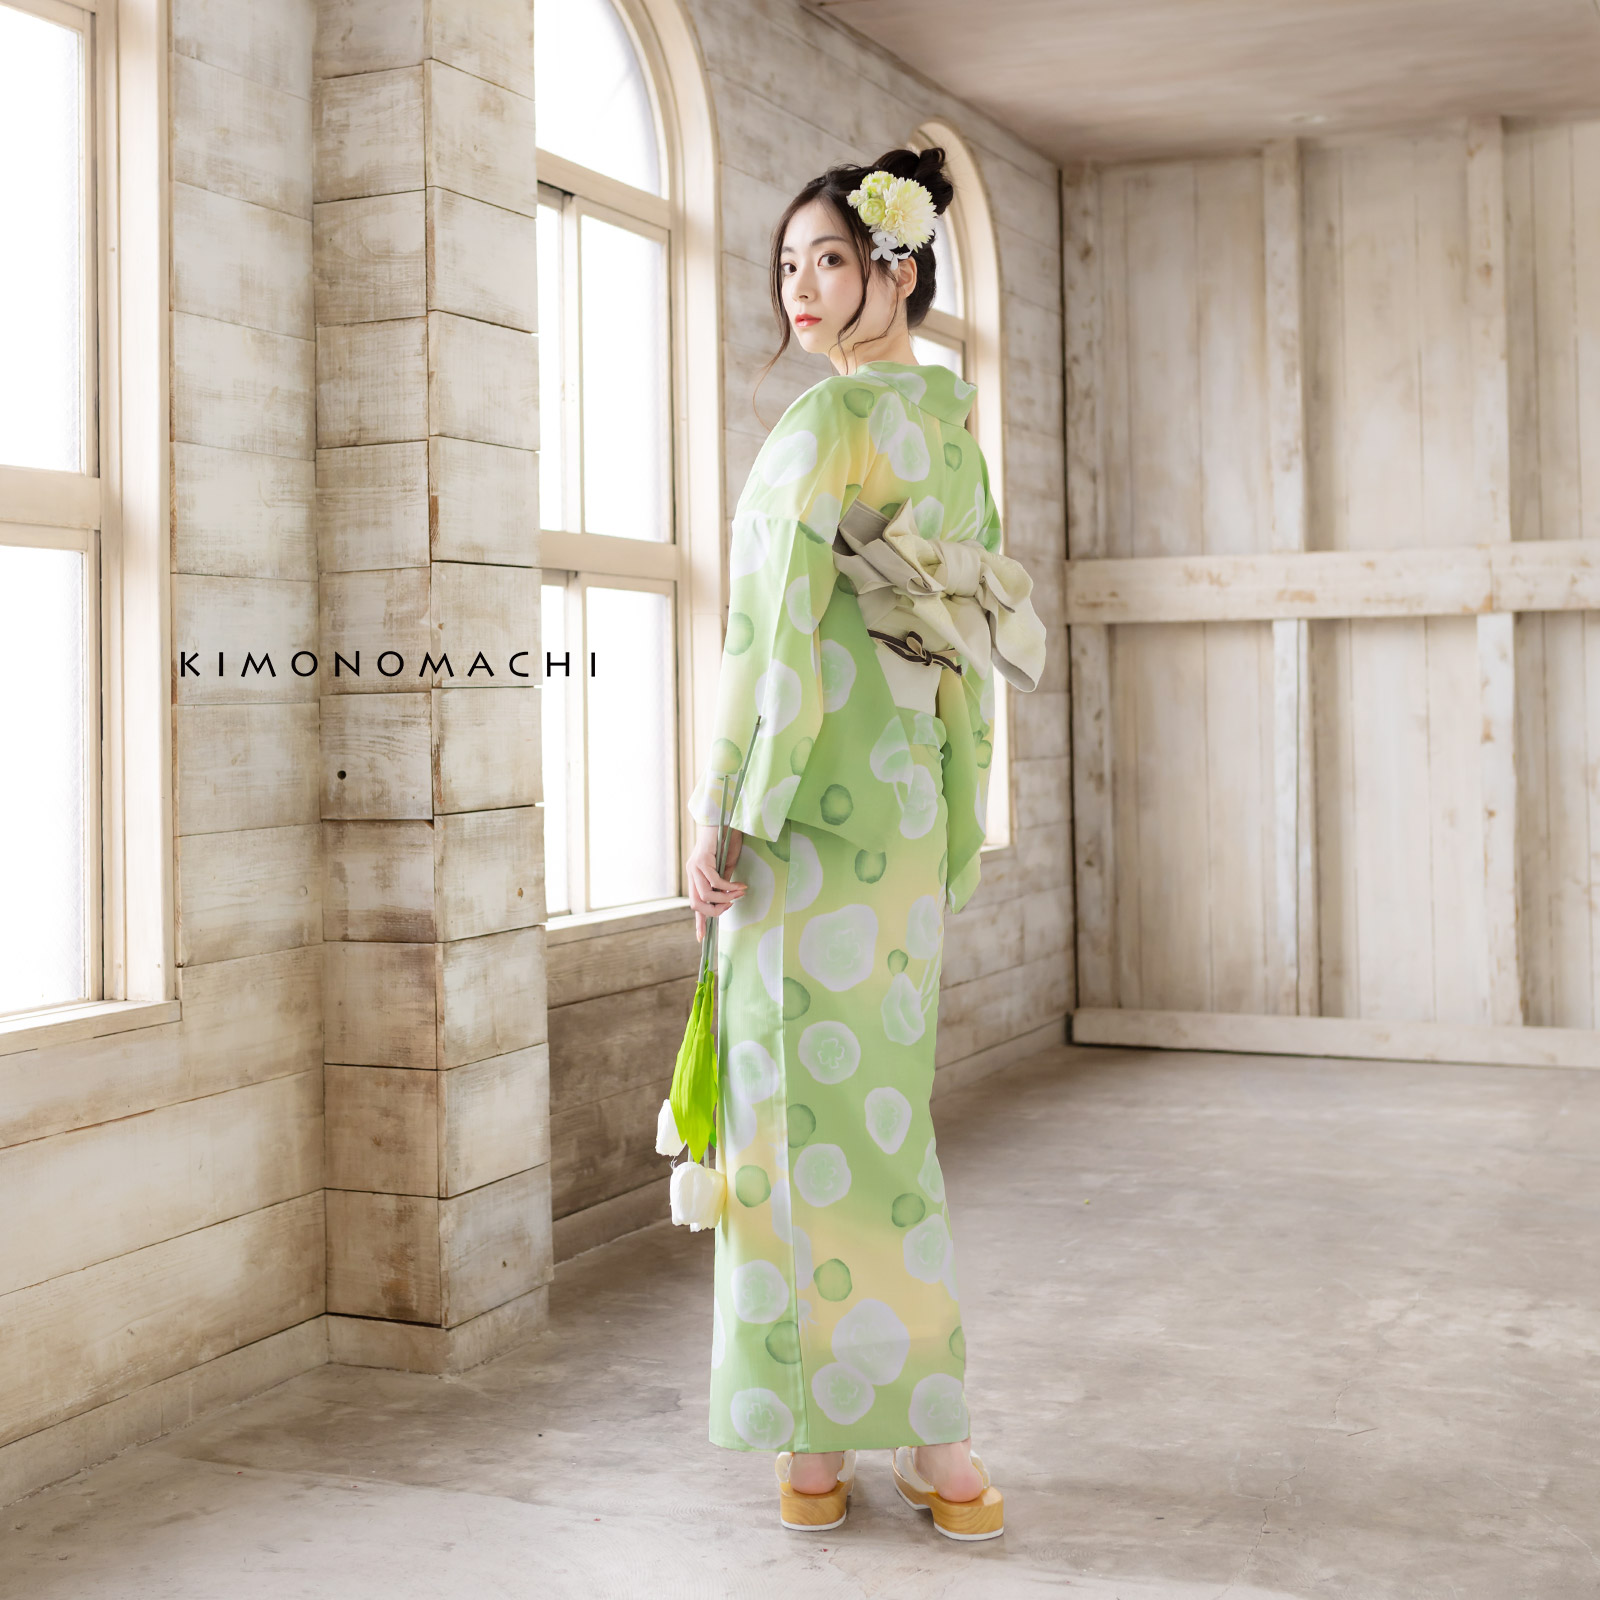 日本製 京都製 和紋 和柄 ハンカチ 桜 サクラ 綿 コットン 浴衣 着物